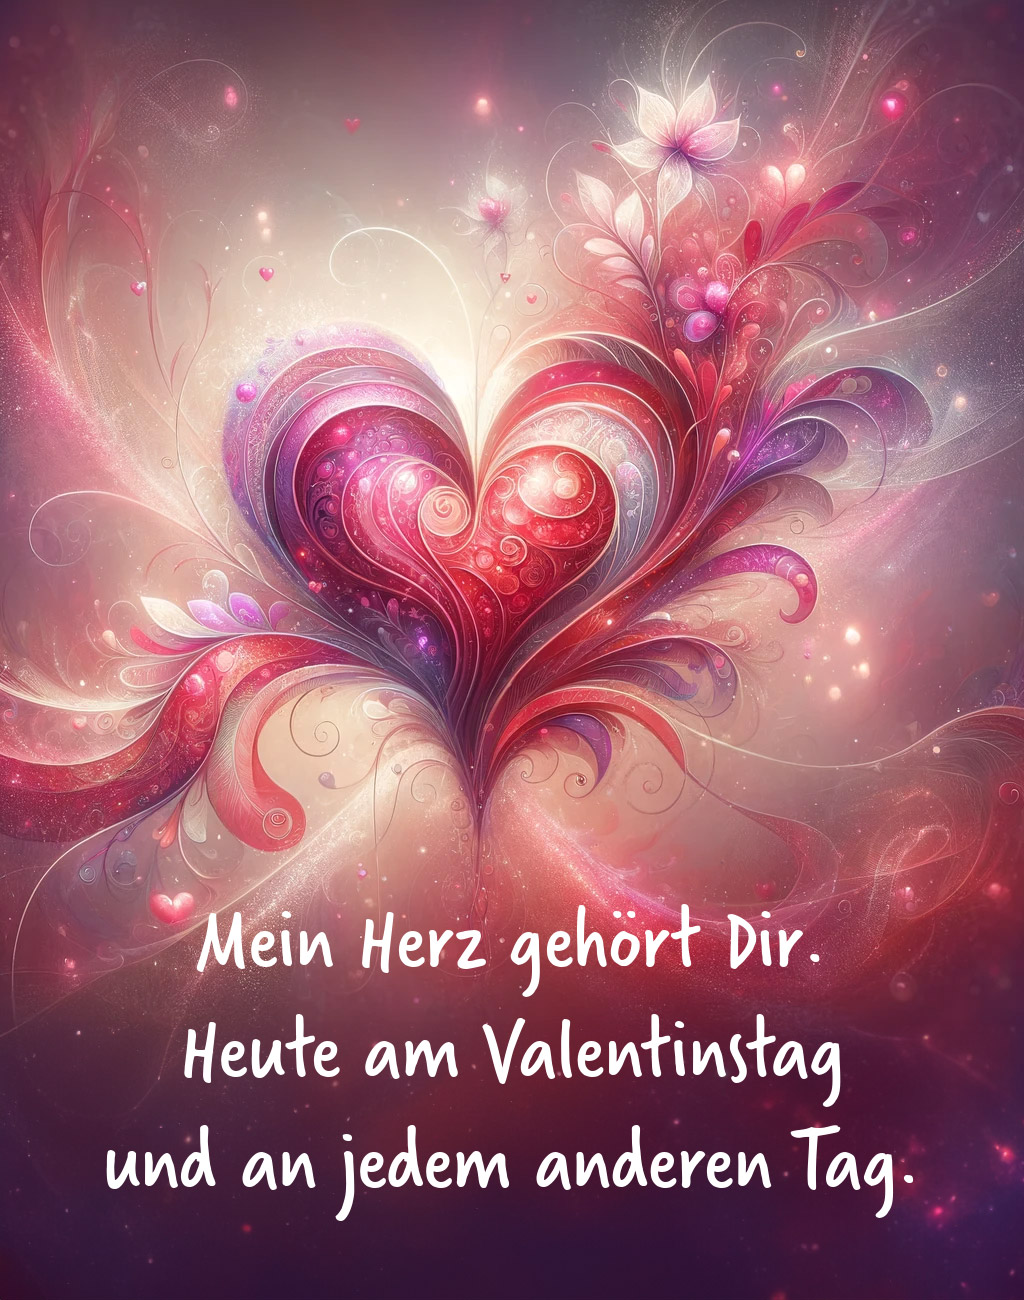 #valentinstag #kunst 22 - Mein Herz gehört dir. Heute am Valentinstag und an jedem anderen Tag.